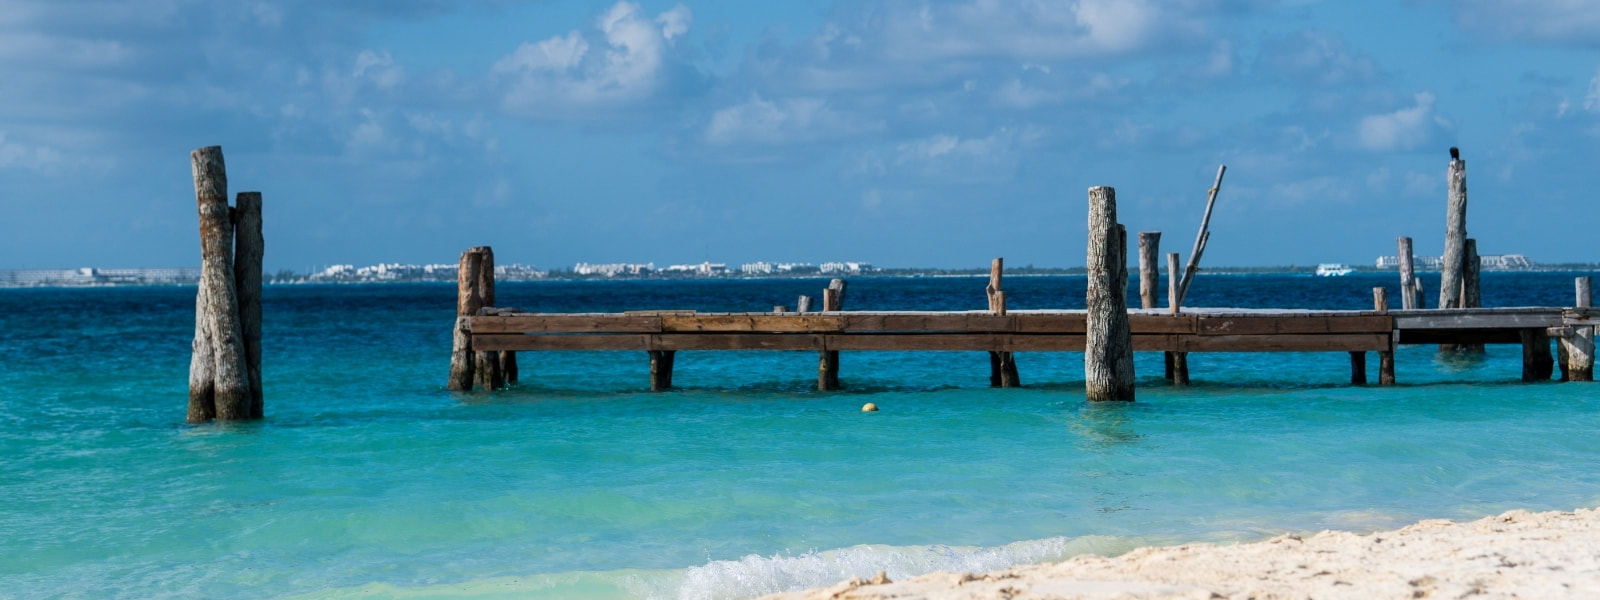 Isla Mujeres: Las mejores playas sin Sargazo